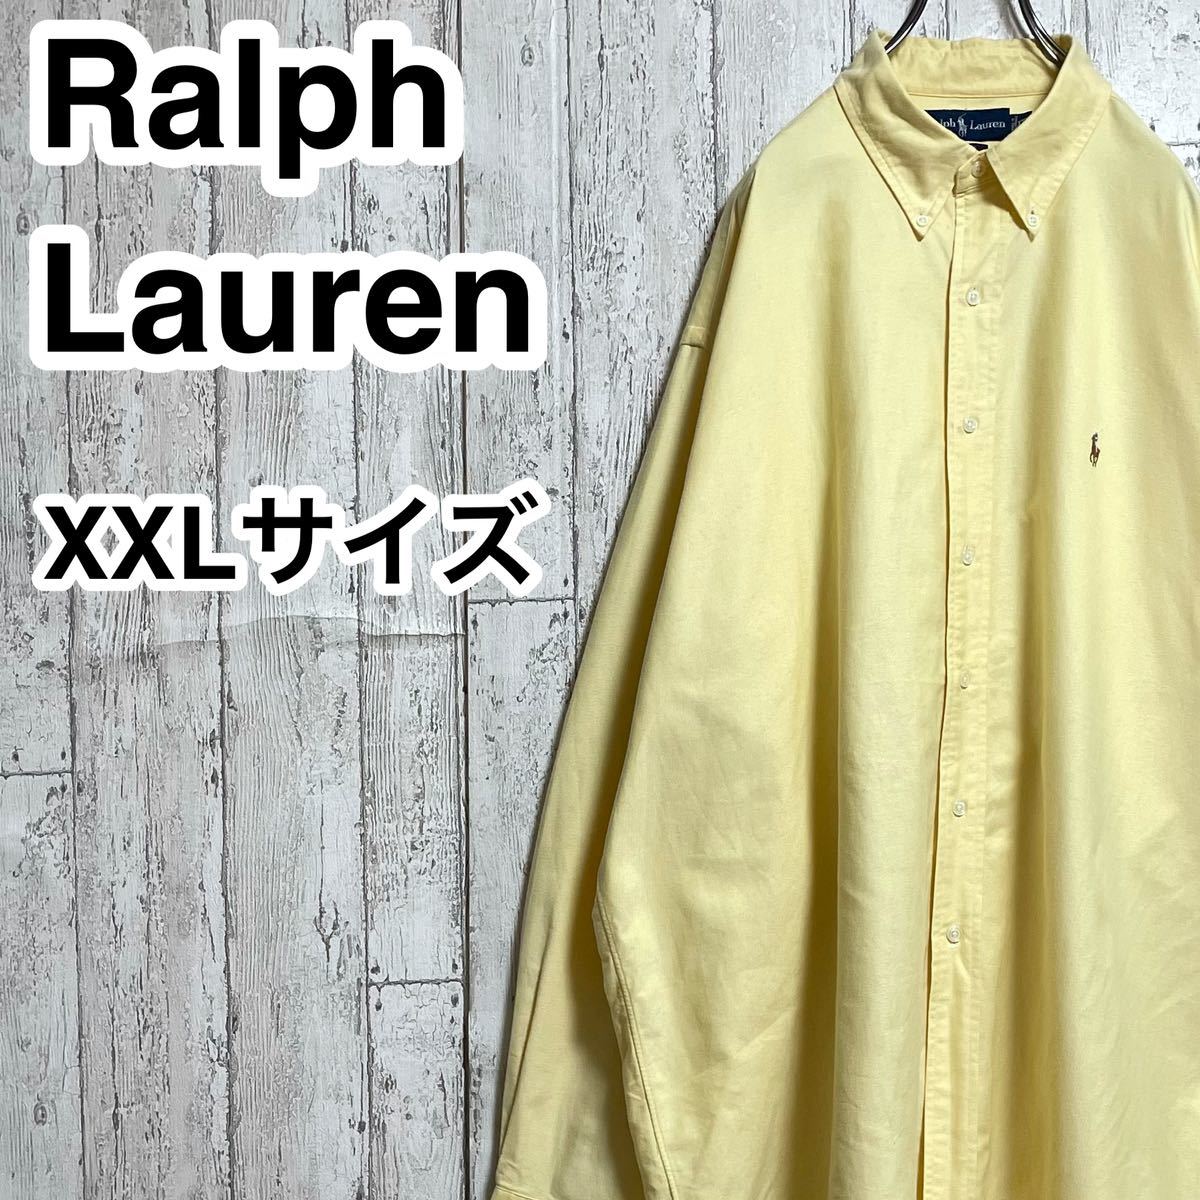 【人気ブランド】Ralph Lauren ラルフローレン 長袖 BDシャツ ボタンダウンシャツ ビッグサイズ XXLサイズ イエロー カラーポニー 23-17